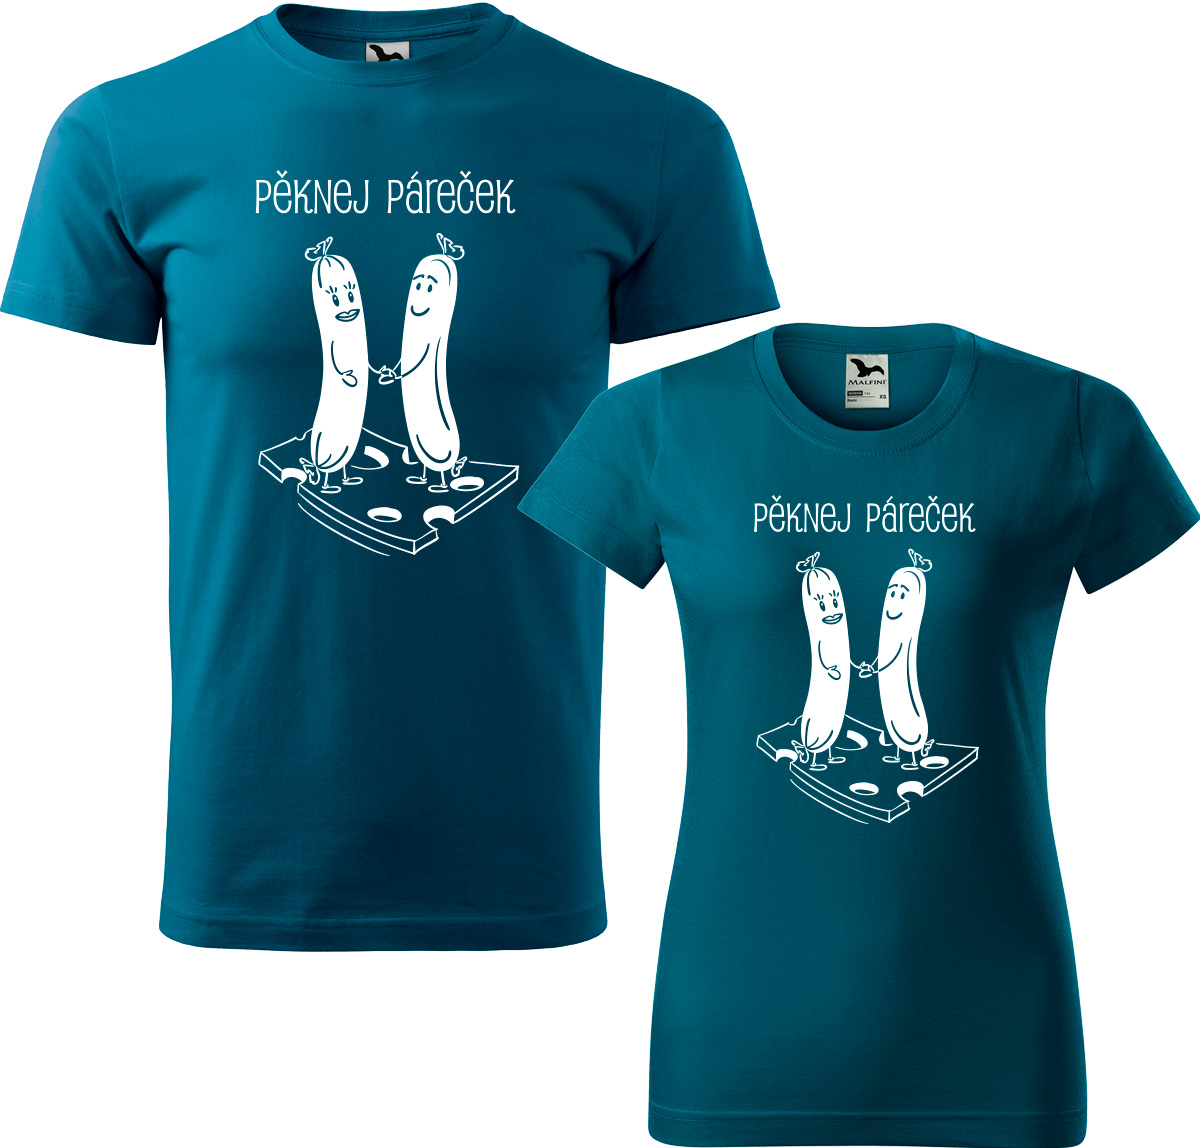 Trička pro páry - Pěknej páreček Barva: Petrolejová (93), Velikost dámské tričko: S, Velikost pánské tričko: XL